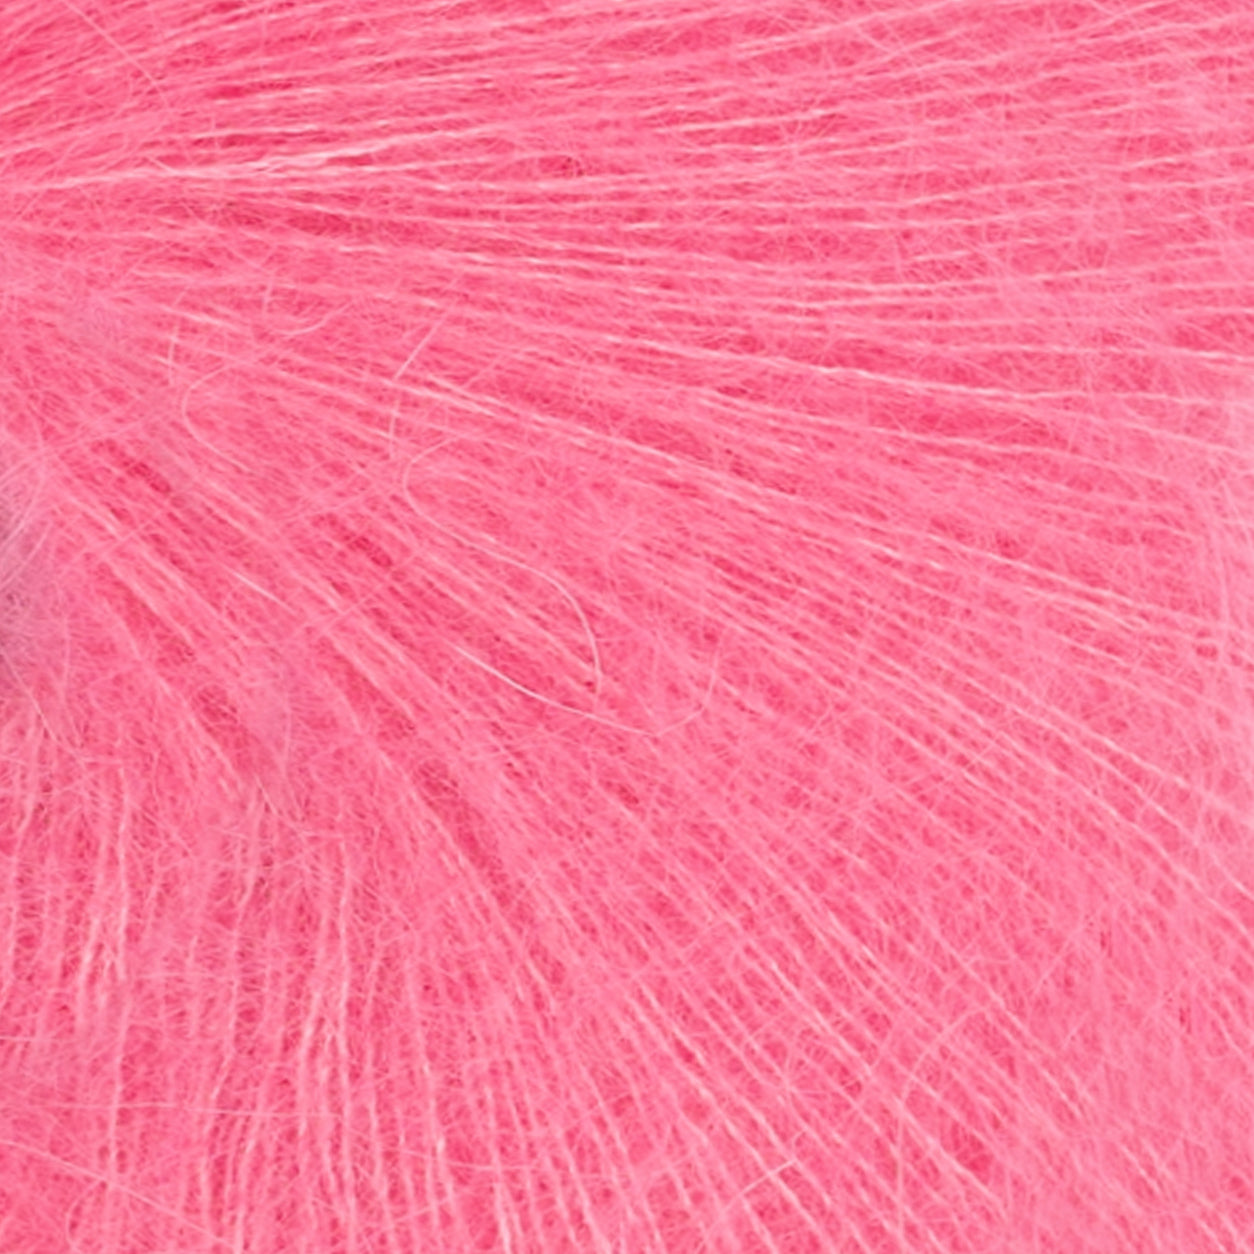 Tynn Silk Mohair bubblegum pink [4315]